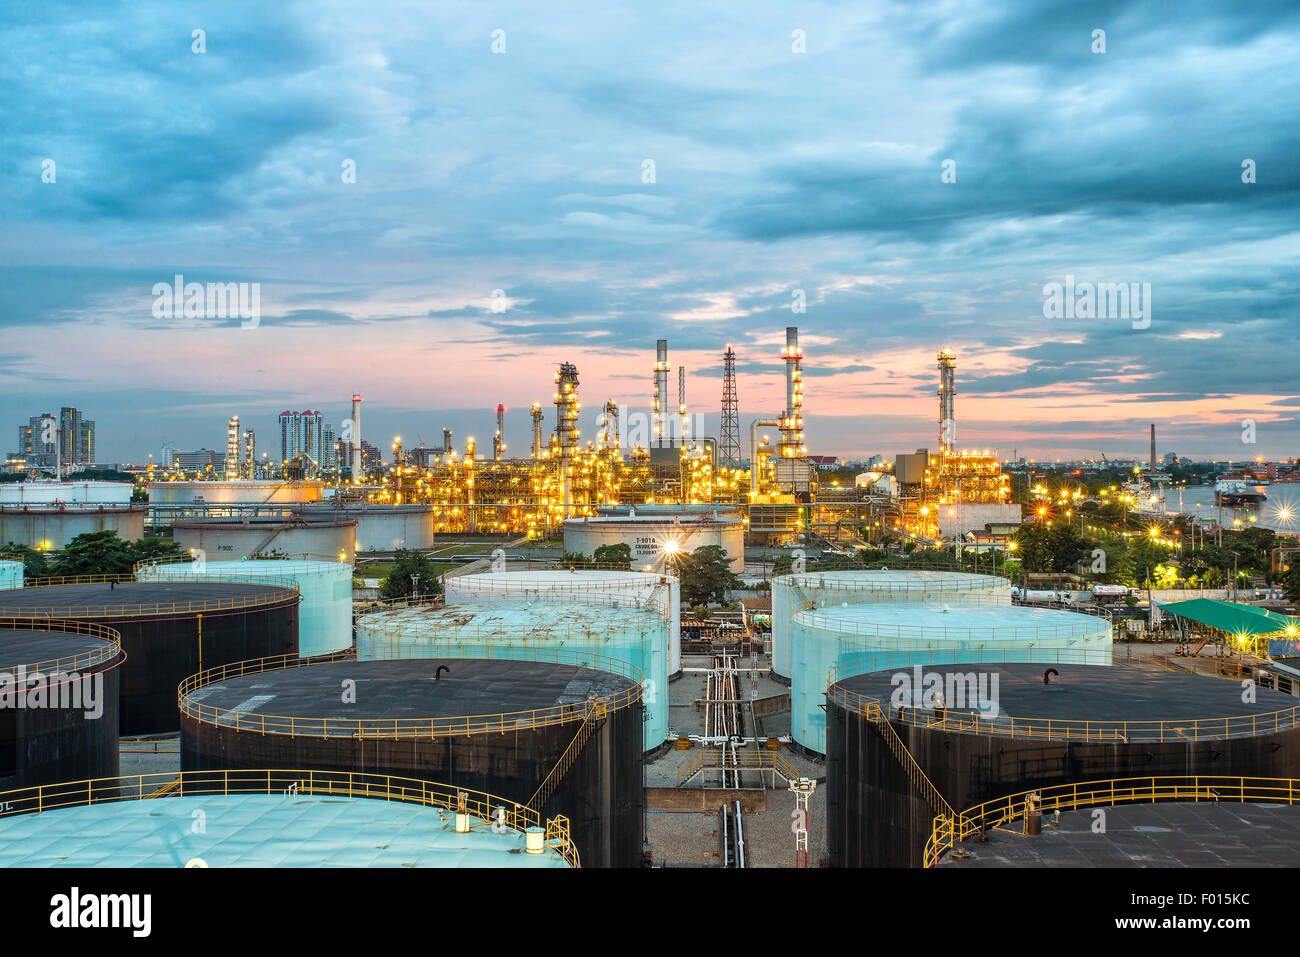 Refinería de petróleo en penumbra Foto de stock